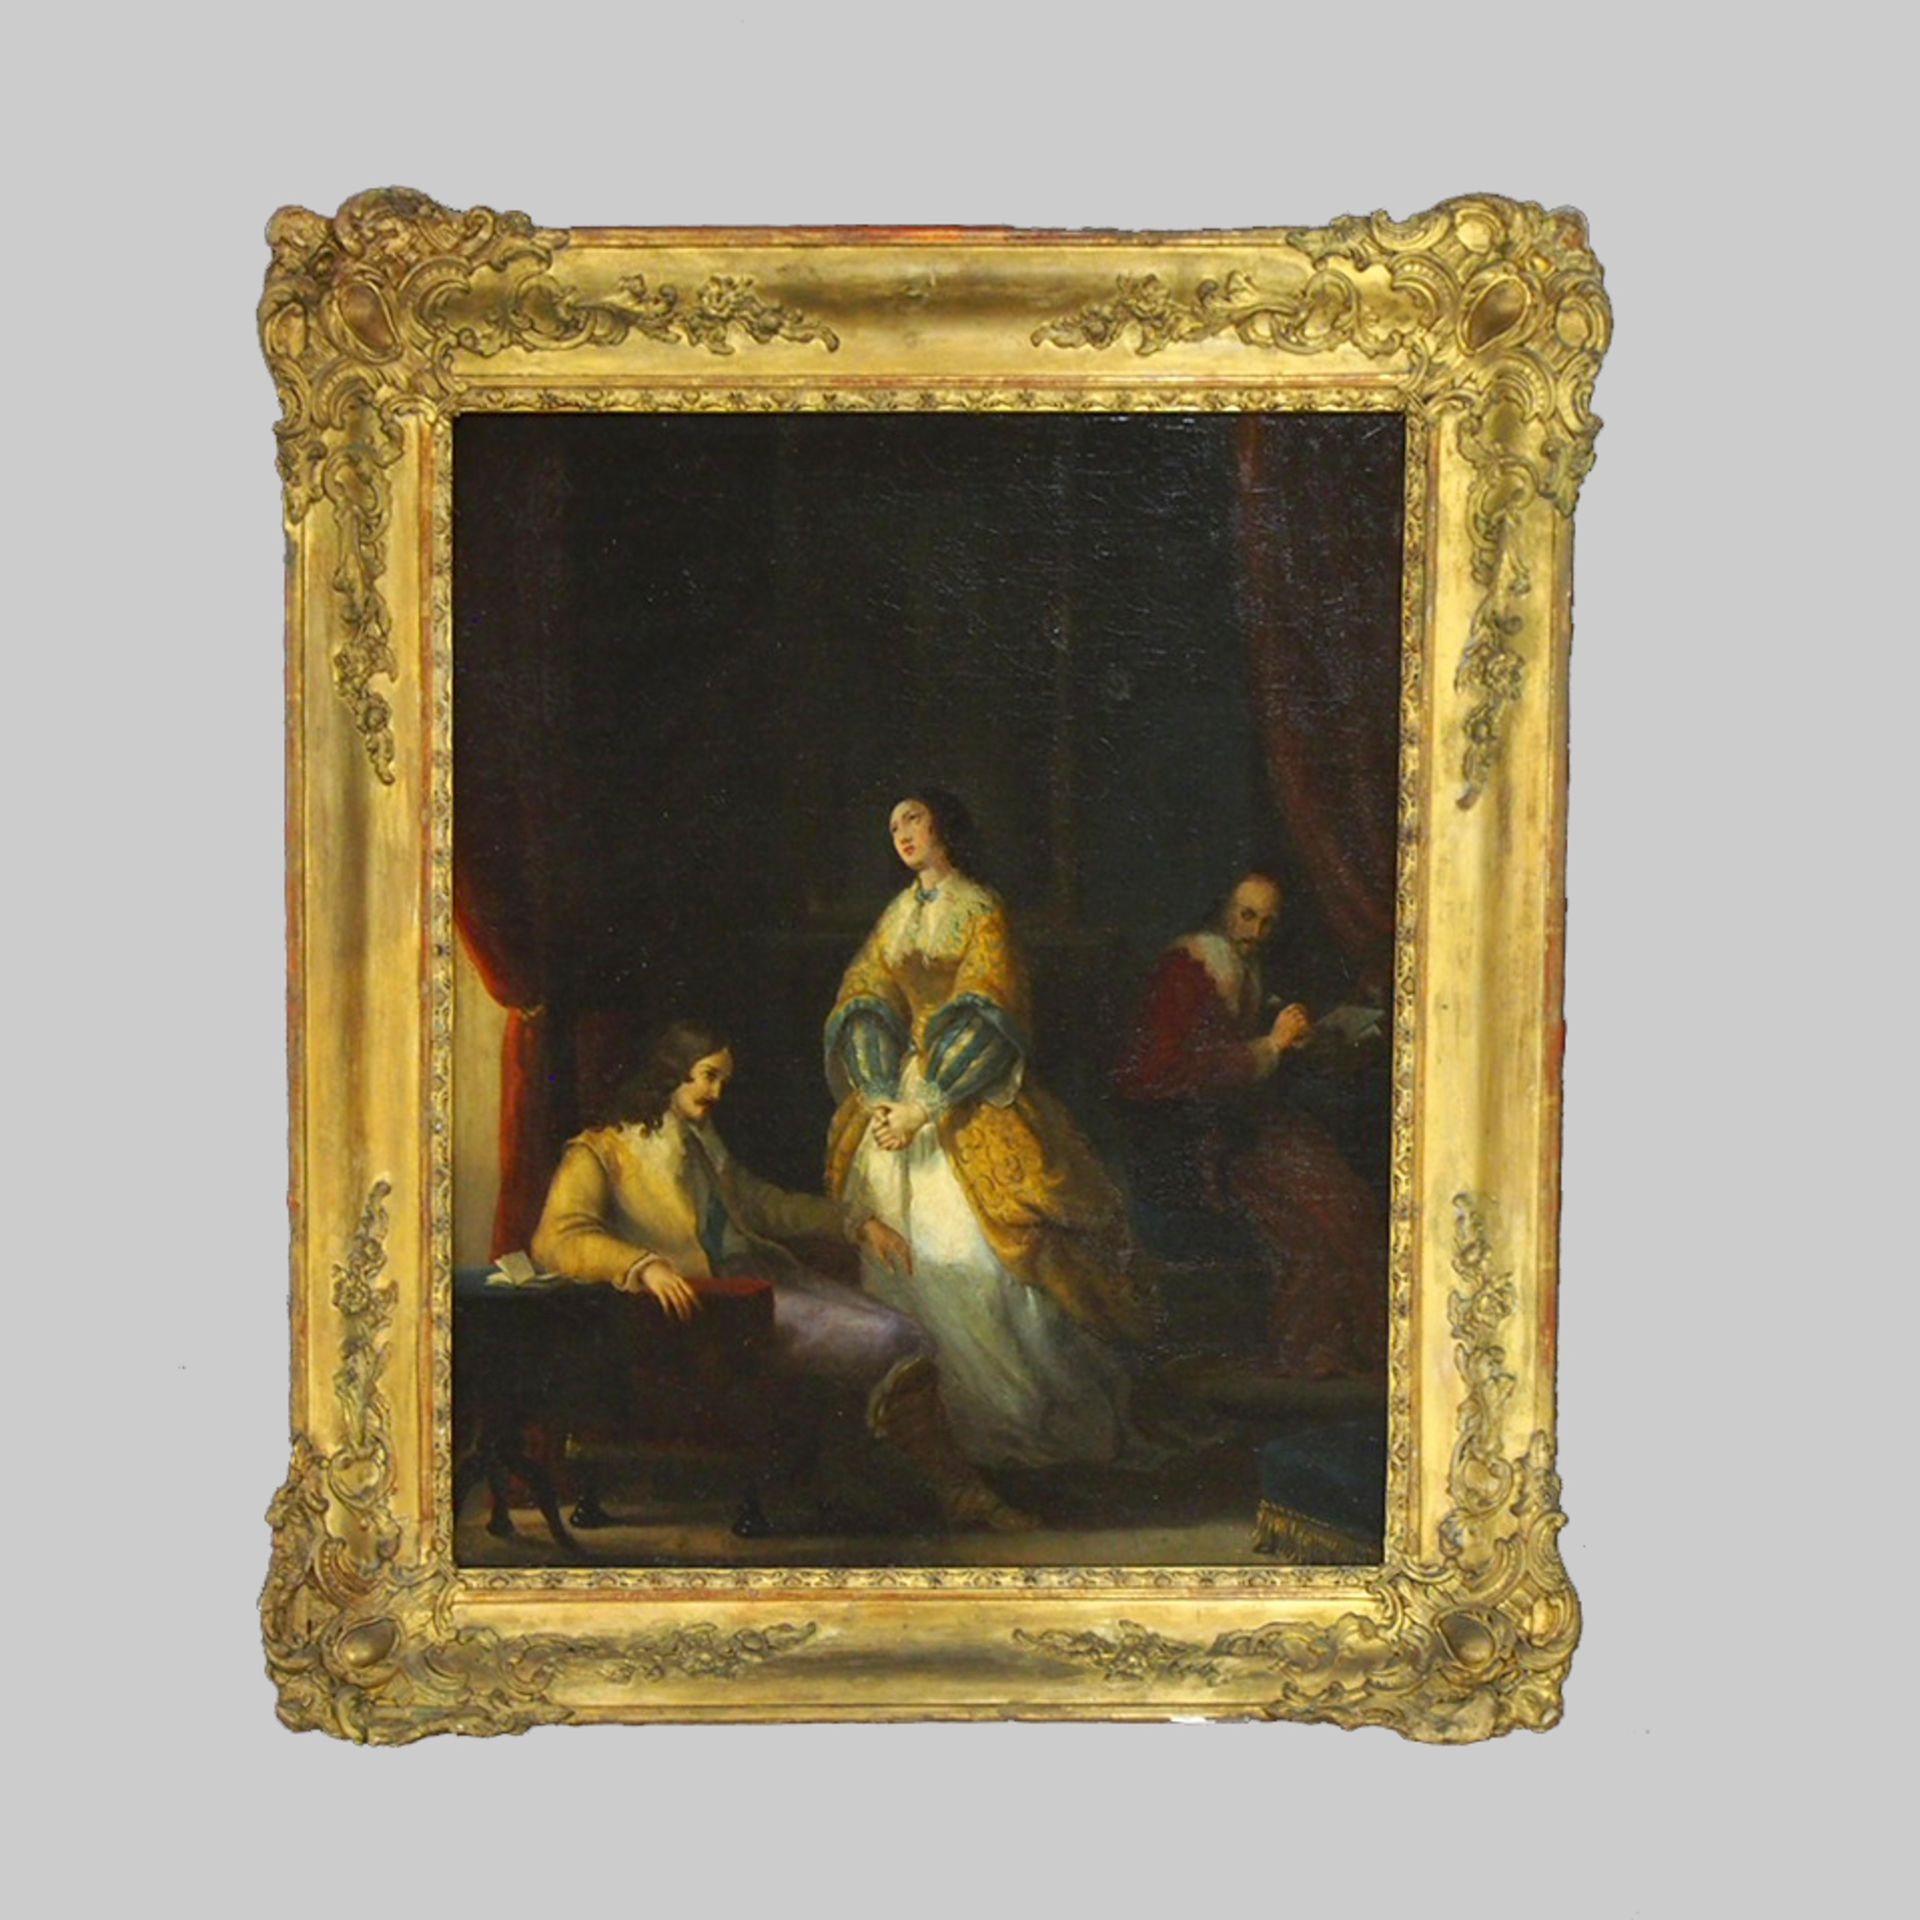 FRANZÖSISCHER MEISTER: Ludwig XIII und seine Frau mit Richelieu